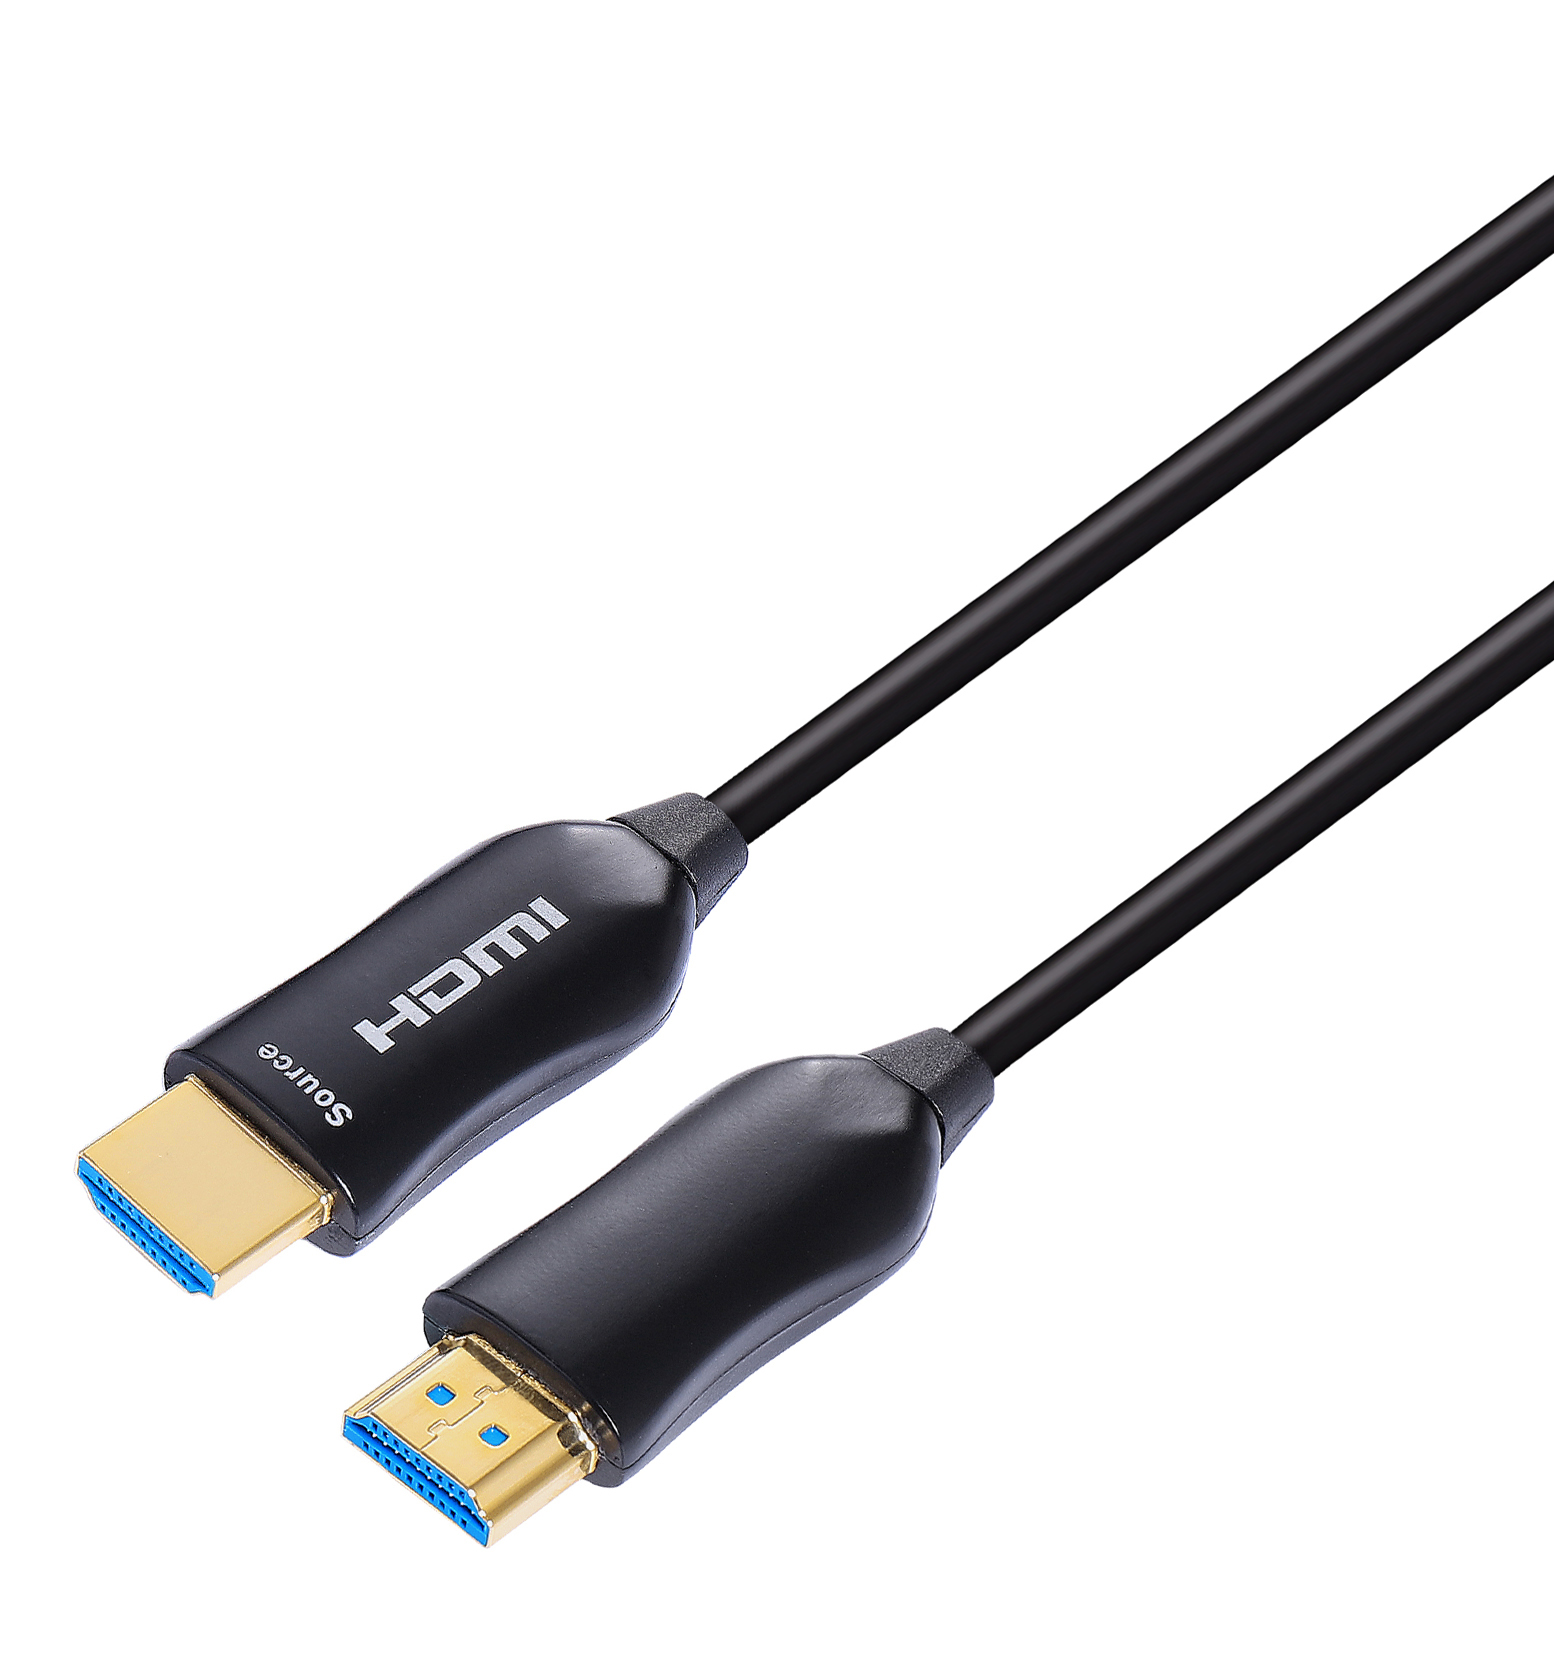 Cable HDMI-HDMF002 Fibra óptica